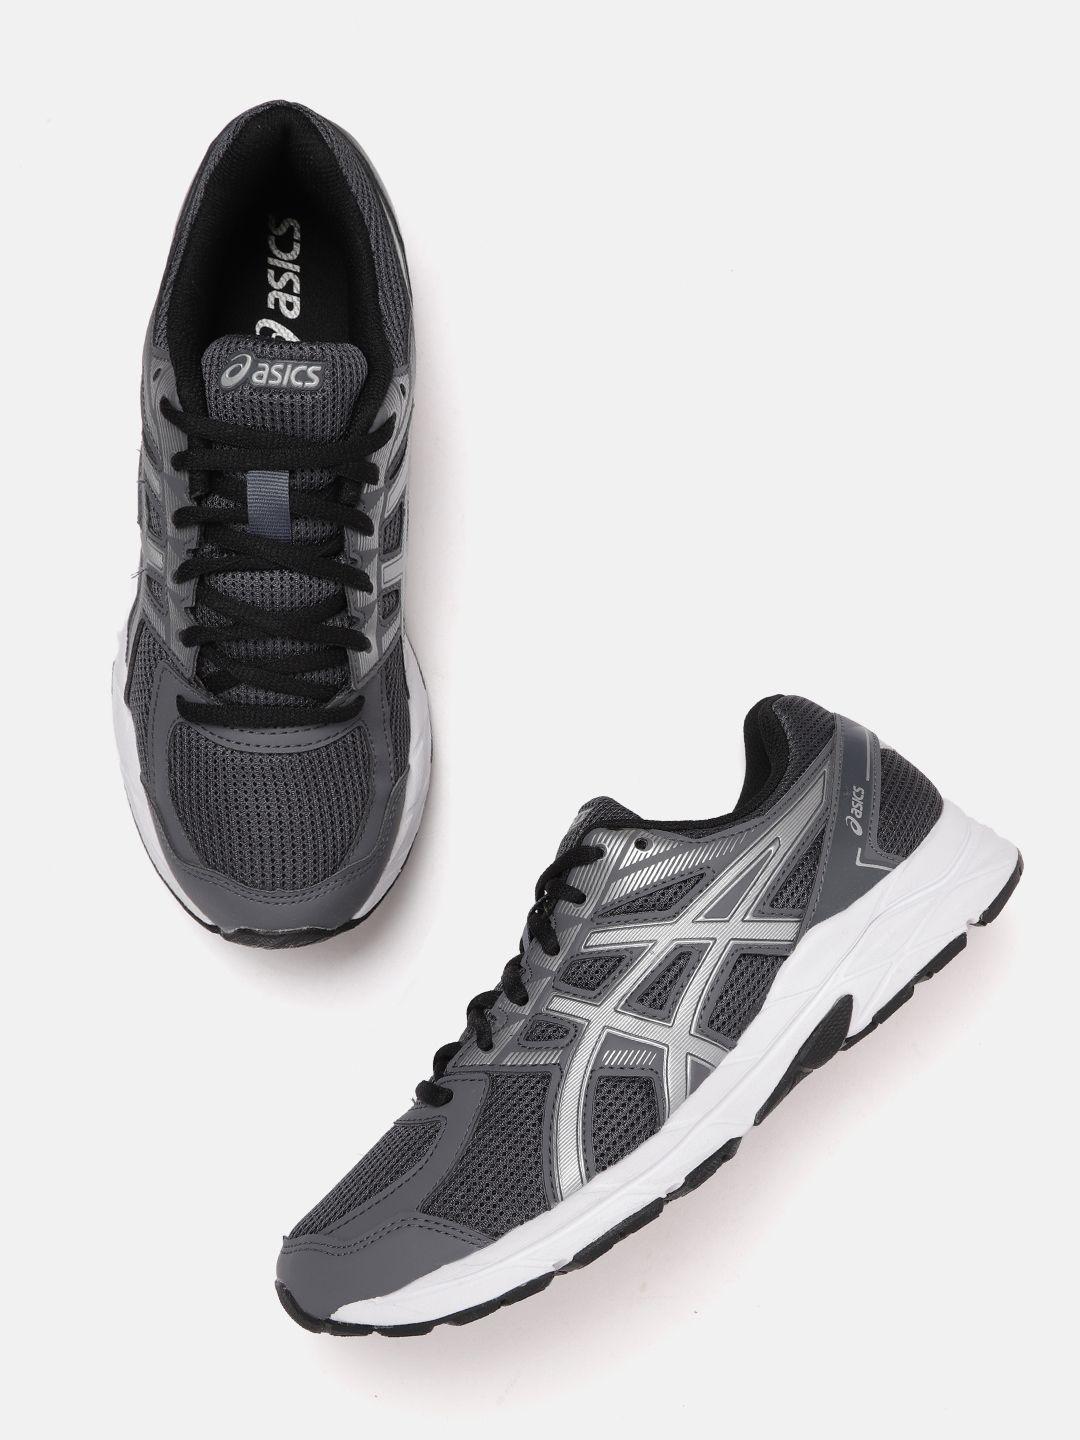 asics-men-grey-woven-design-jolt-1-running-shoes